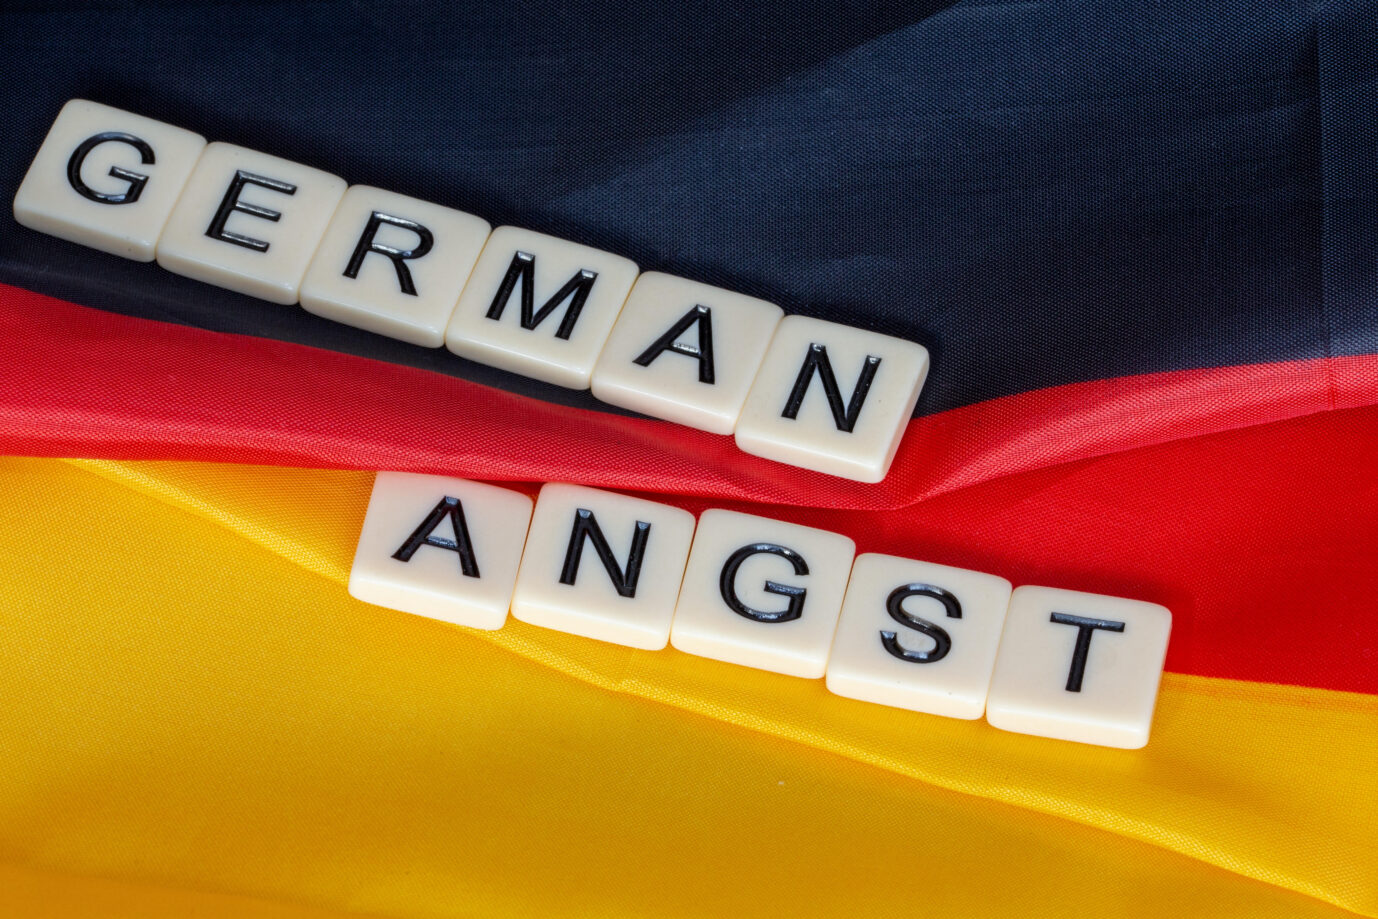 Scrabble-Steine vor einer Deutschlandflagge formen die Worte "German Angst".